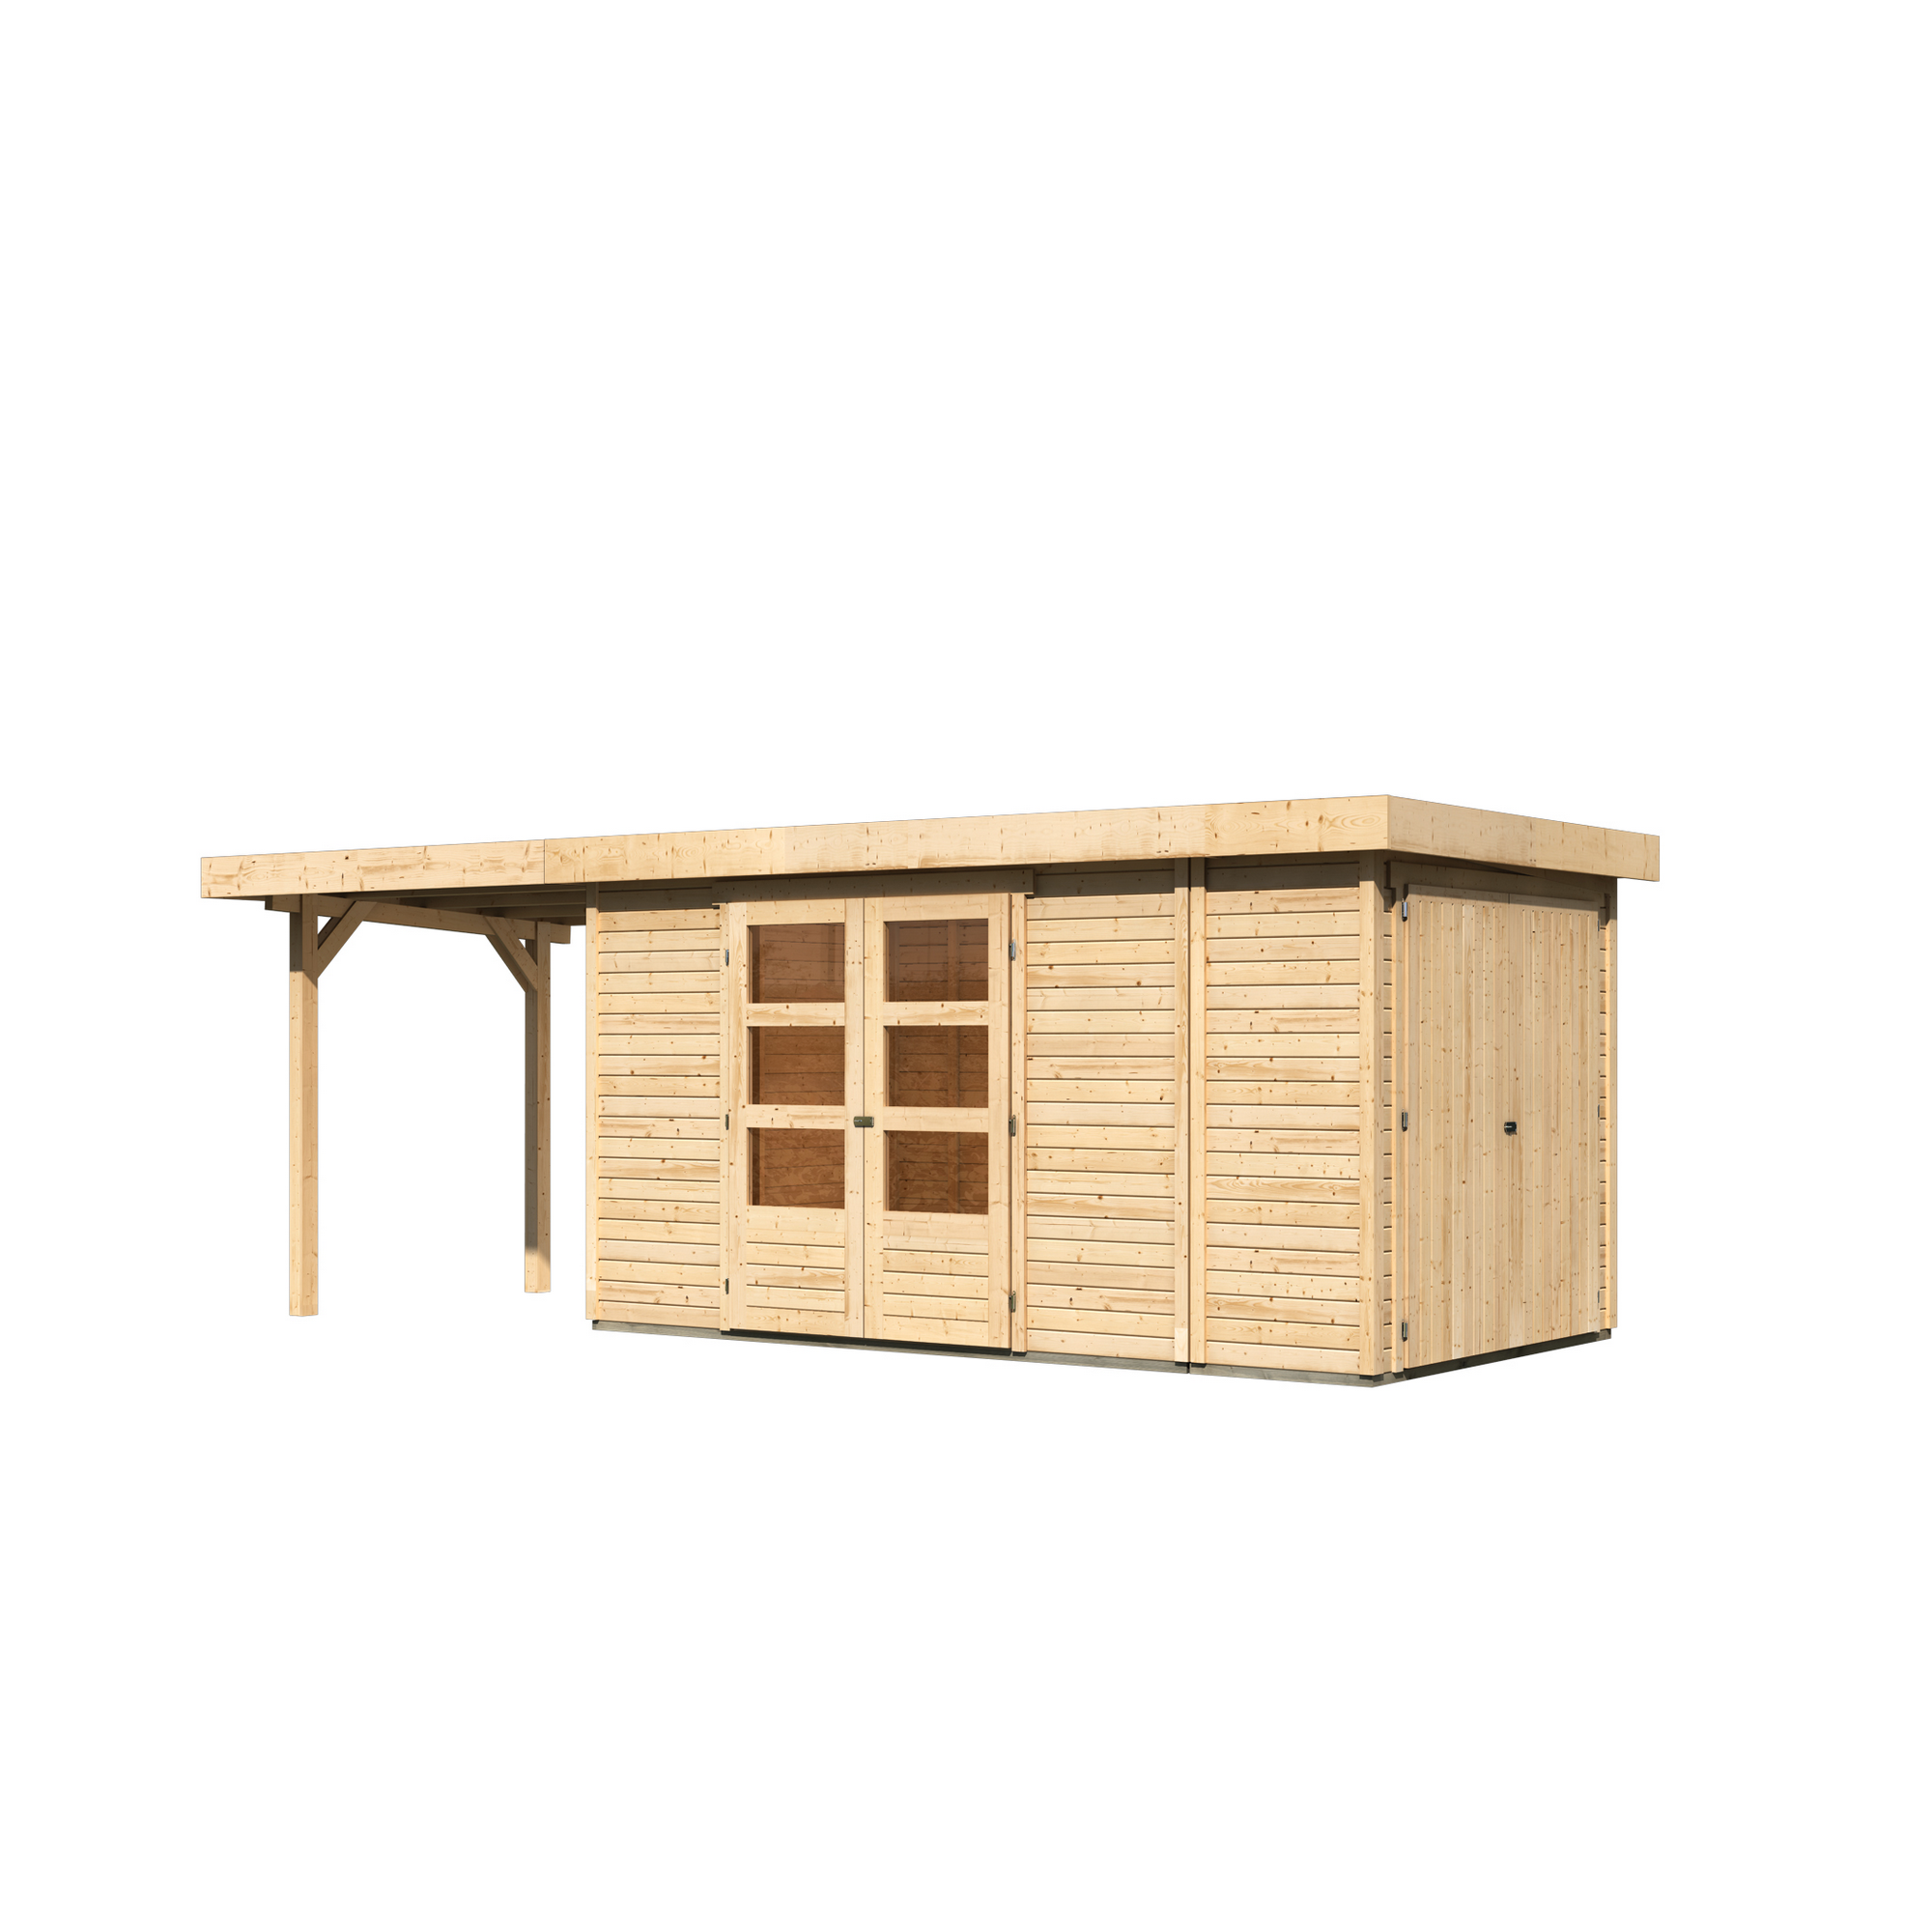 Gartenhaus-Set 'Betola 5' naturbelassen mit Anbauschrank und Anbaudach 629 x 211 x 238 cm + product picture